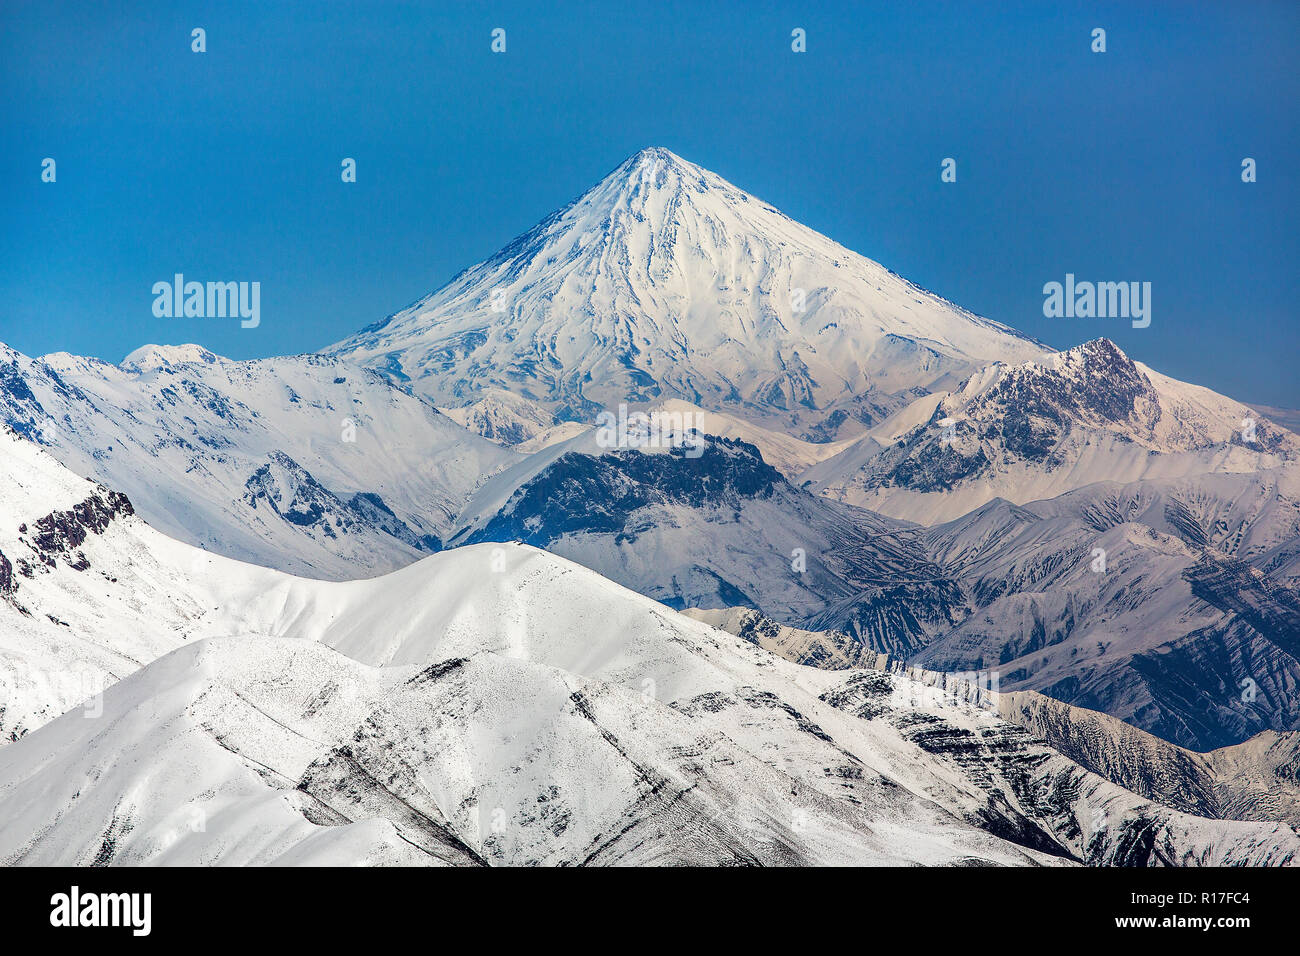 Le mont Damavand, un volcan actif, est un volcan qui est le plus haut sommet de l'Iran et le plus haut volcan de l'Asie. Banque D'Images